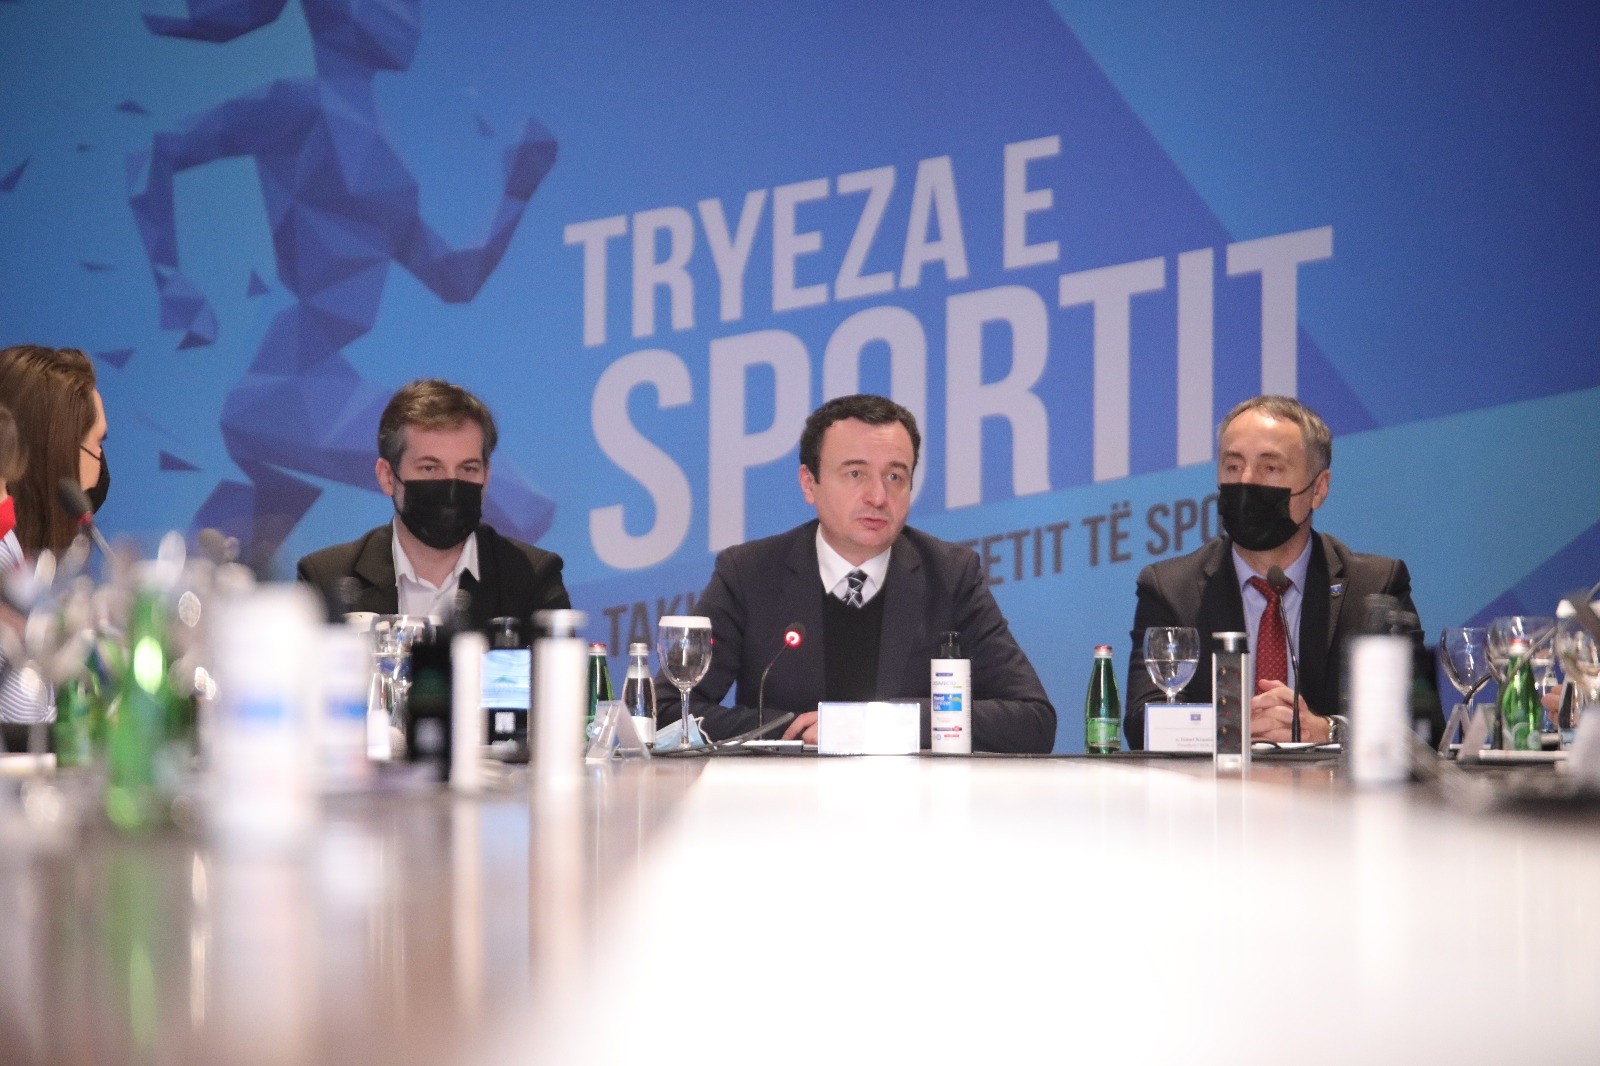 Kryeministri Kurti: Sportin ta kthejmë në kulturë të shoqërisë  